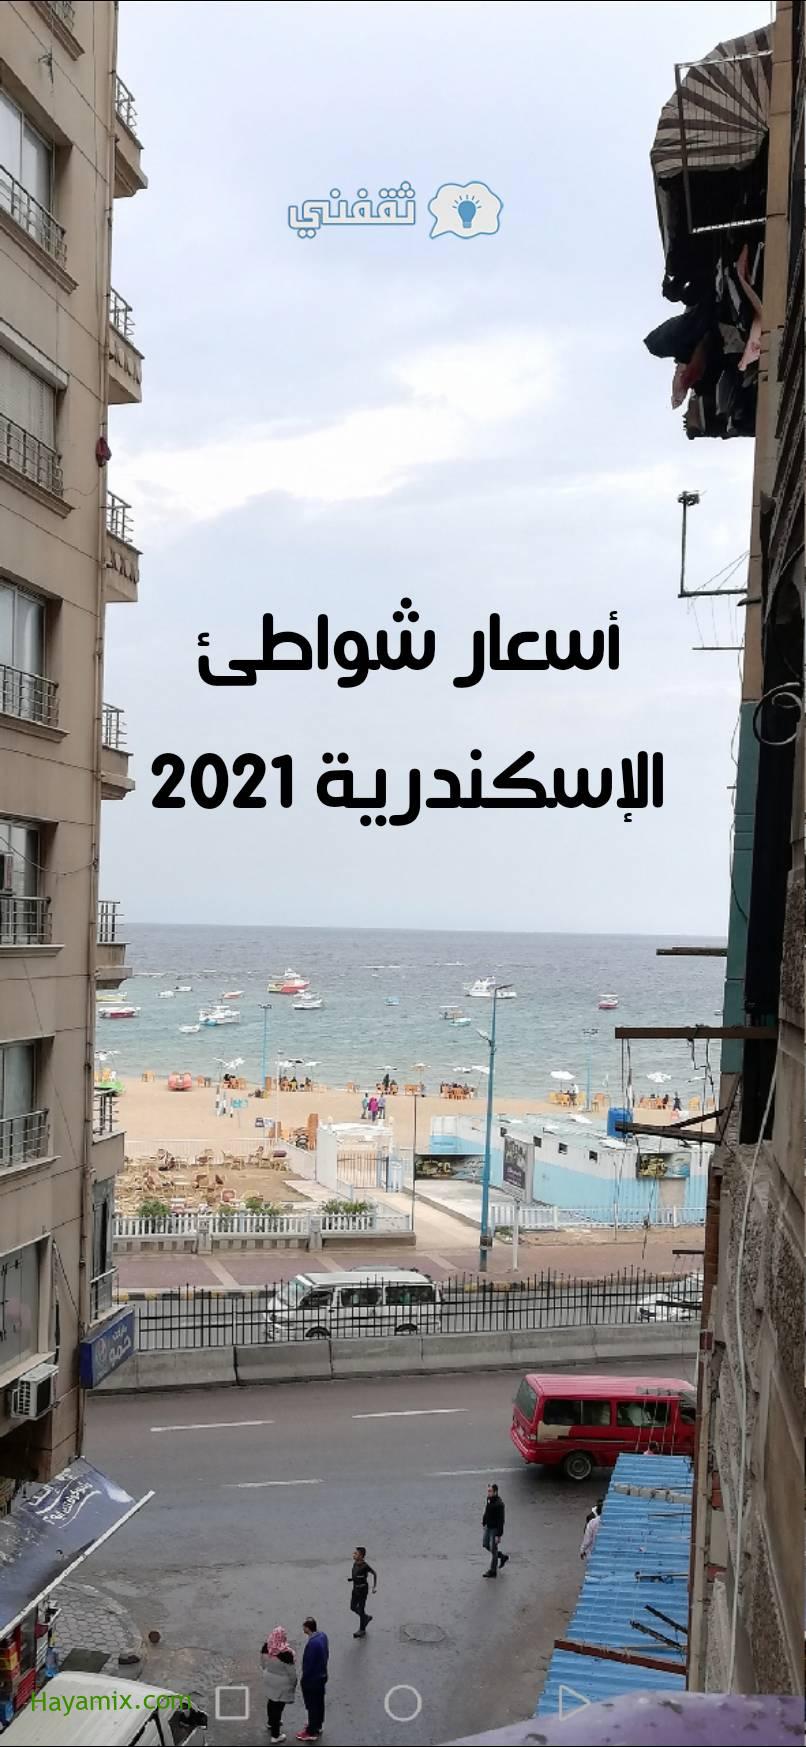 أسعار دخول الشواطئ في الإسكندرية 2021 الخاصة والمميزة ومواعيد الفتح